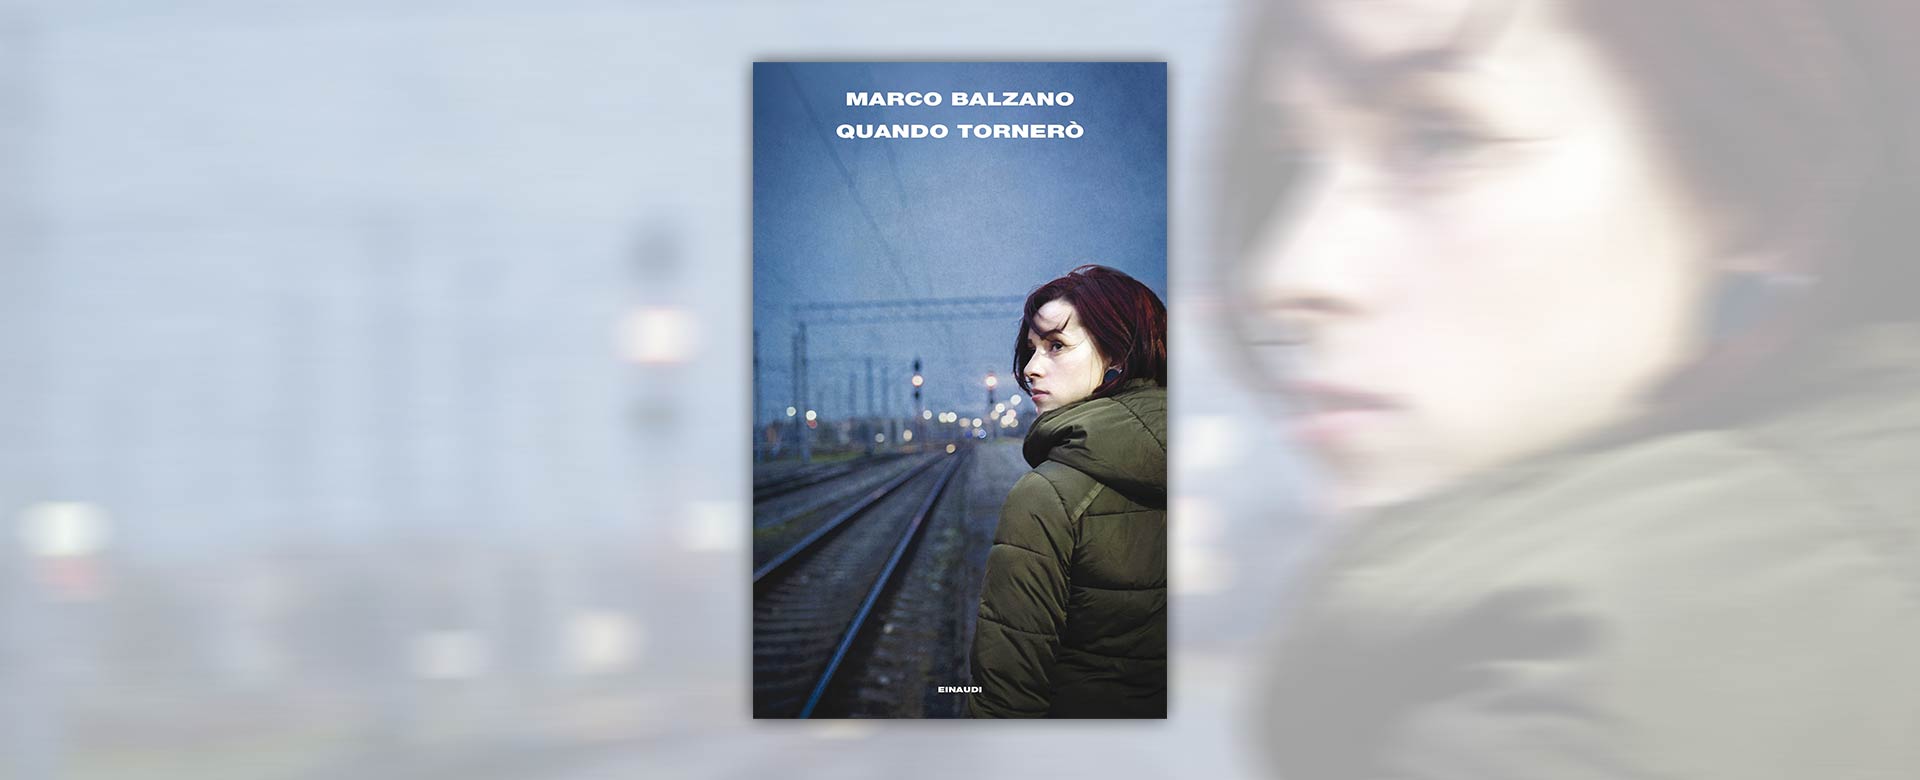 Immagine del libro Quando tornerò di Marco Balzano